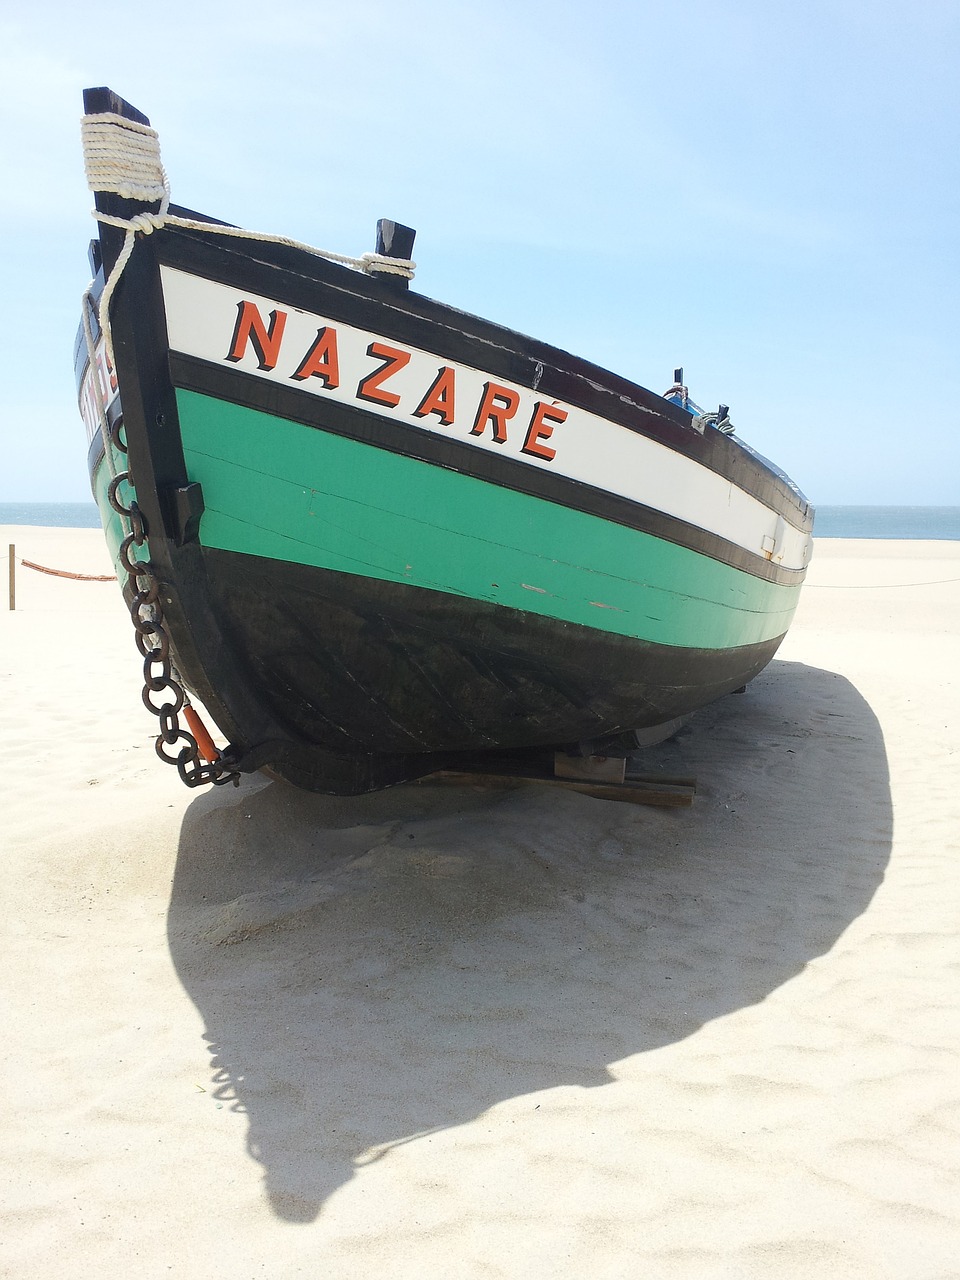 boat nazareth portugal free photo